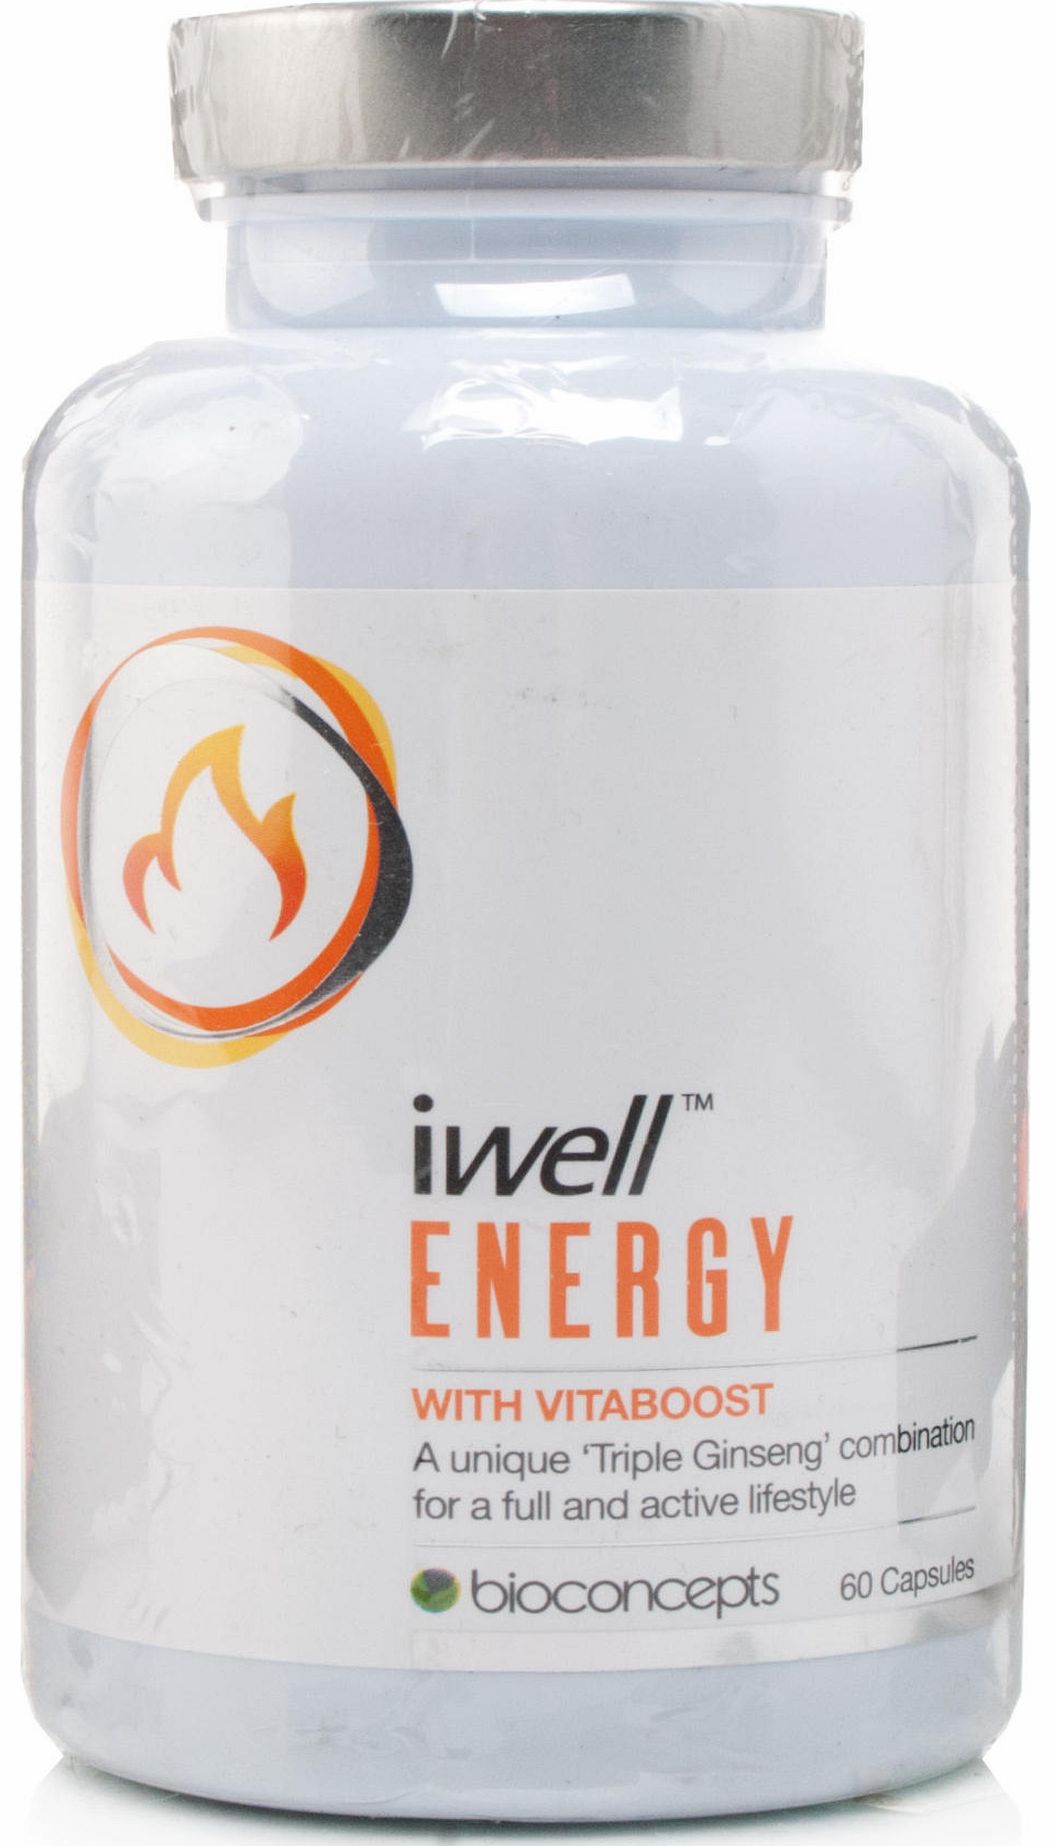 iwell Energy Vitaboost